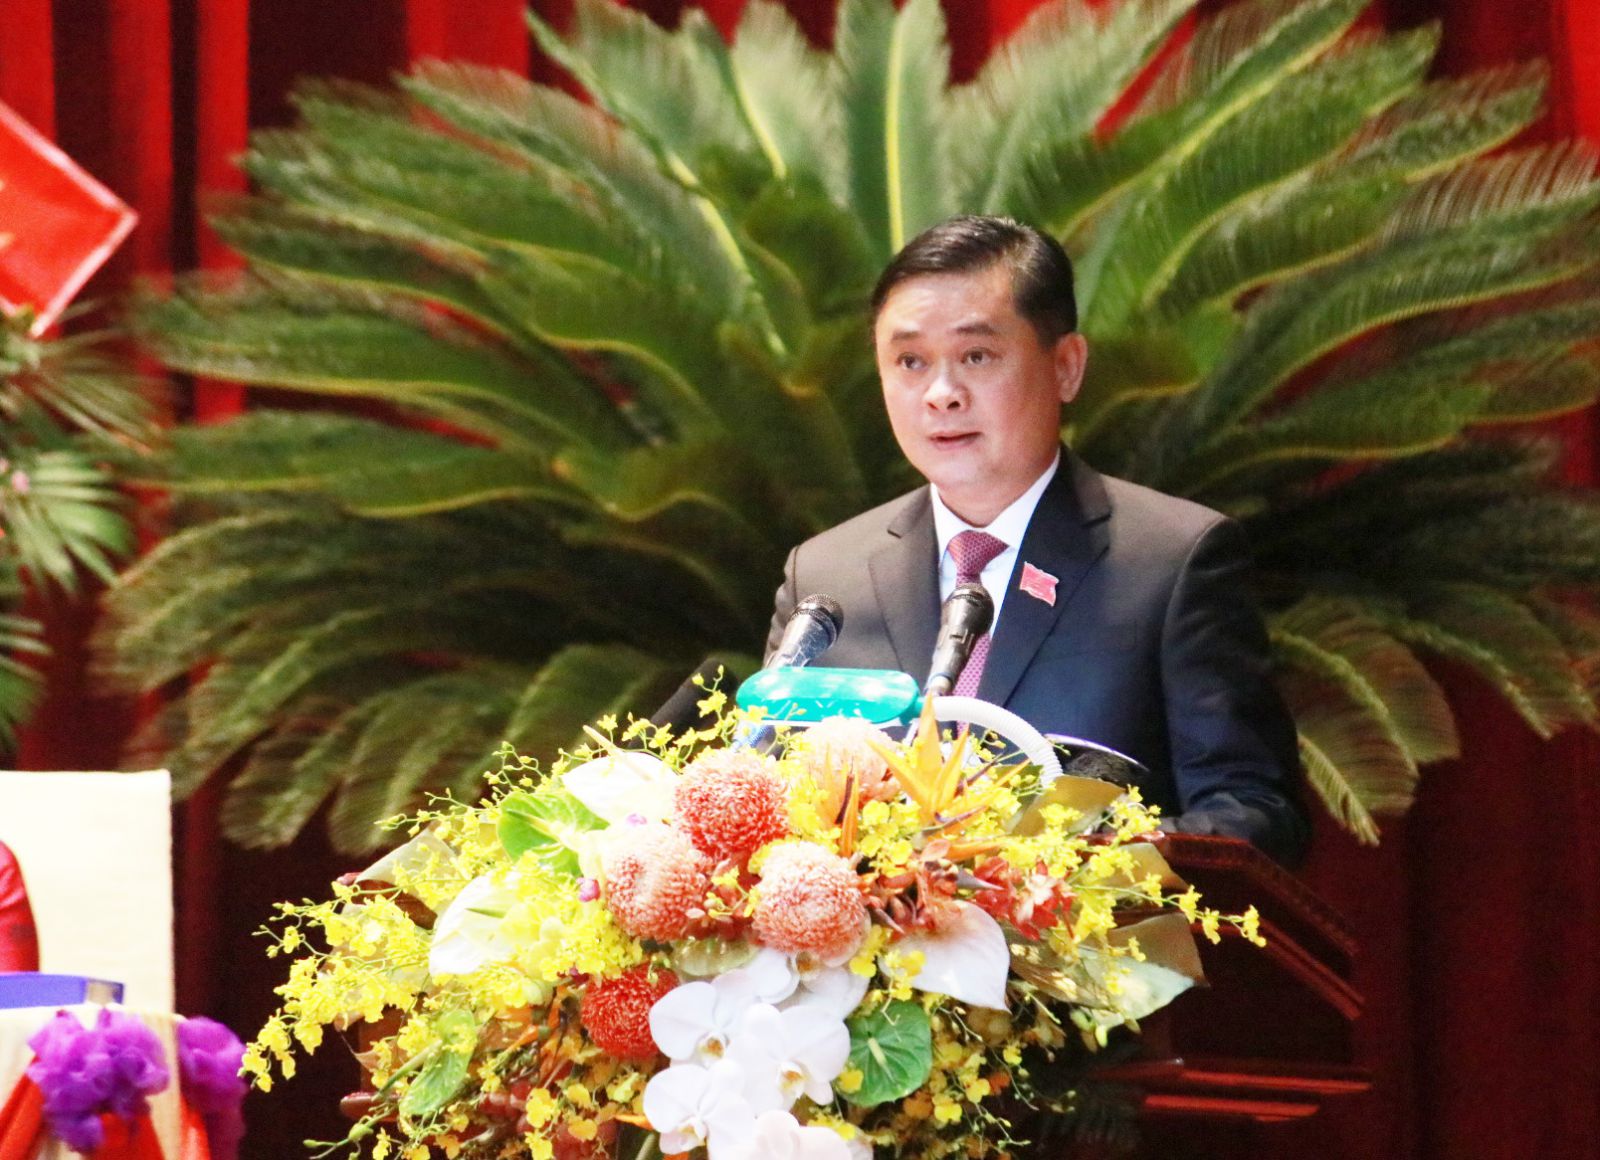 Ông Thái Thanh Quý (SN 1976) được bầu tái đắc cử Bí thư Tỉnh ủy Nghệ An nhiệm kỳ 2020-2025